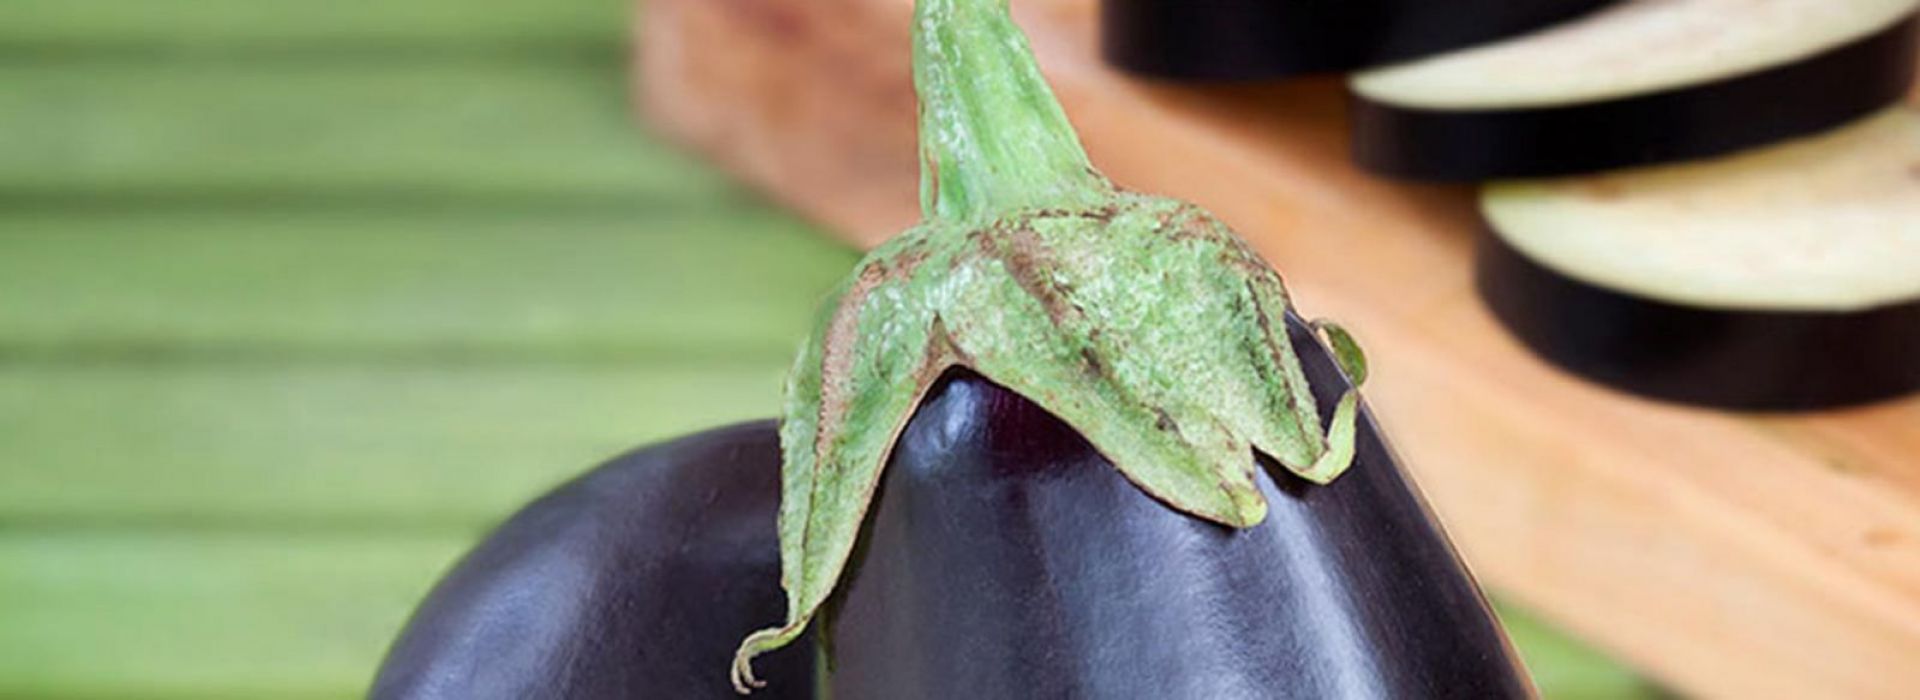 Eggplant 